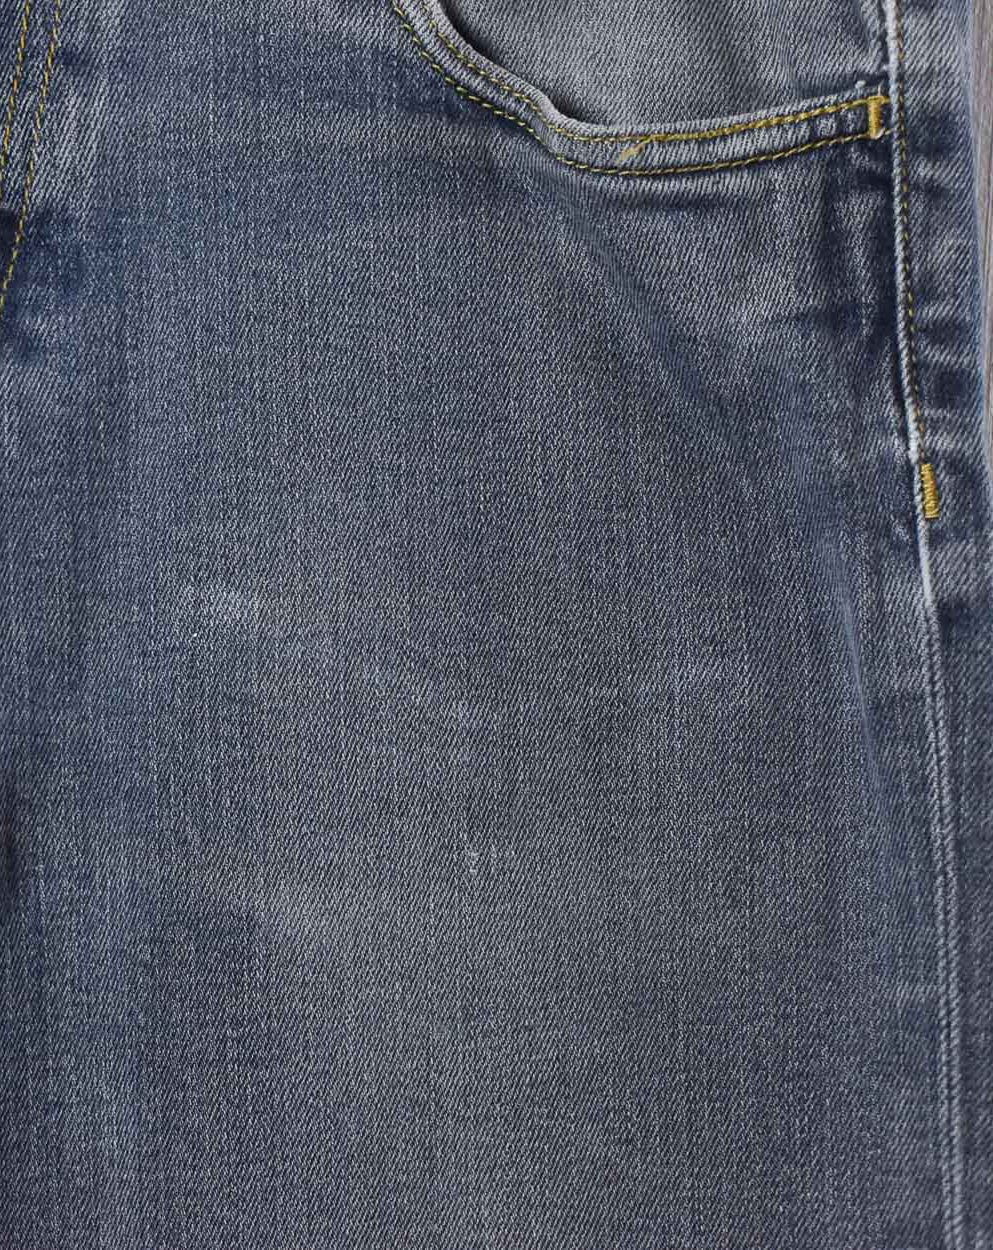 Grey Carhartt WIP Jeans - W34 L31